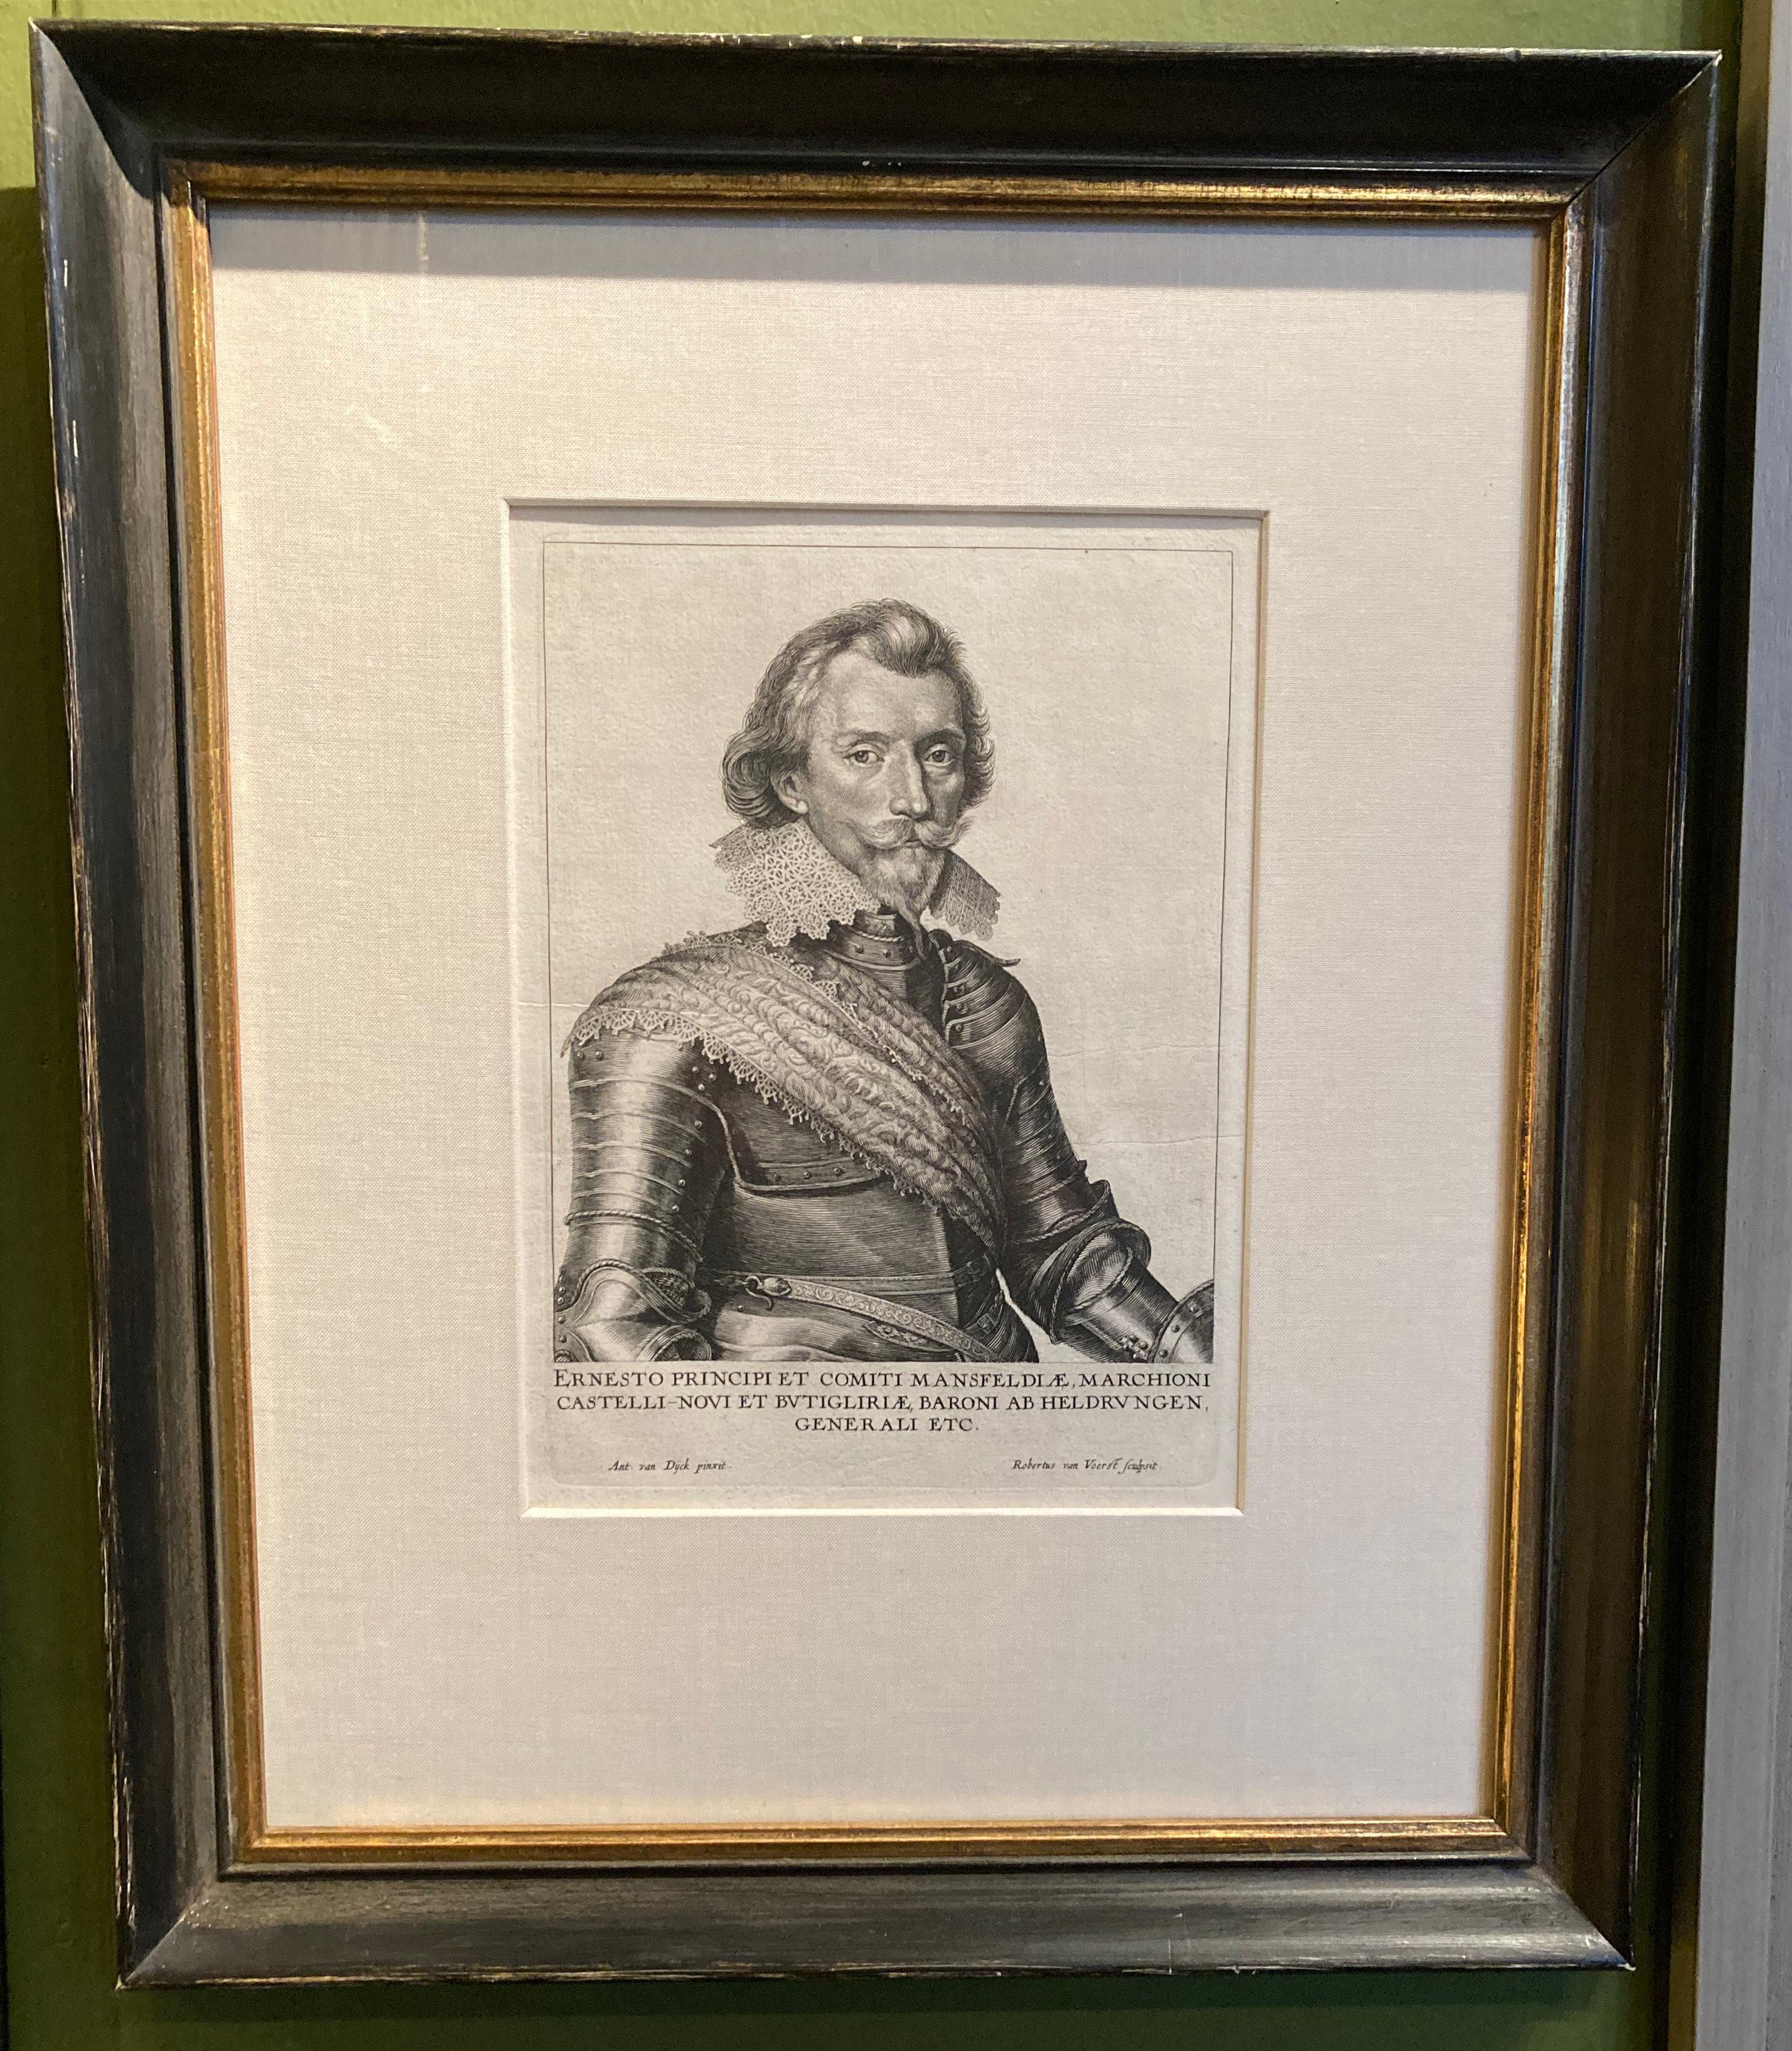 Dieses wundervoll detaillierte und charismatische Porträt veranschaulicht die technische Meisterschaft und künstlerische Vision von Van Dyck. Ernest de Mansfelds majestätischer und doch zugänglicher Gesichtsausdruck spiegelt Van Dycks raffinierte